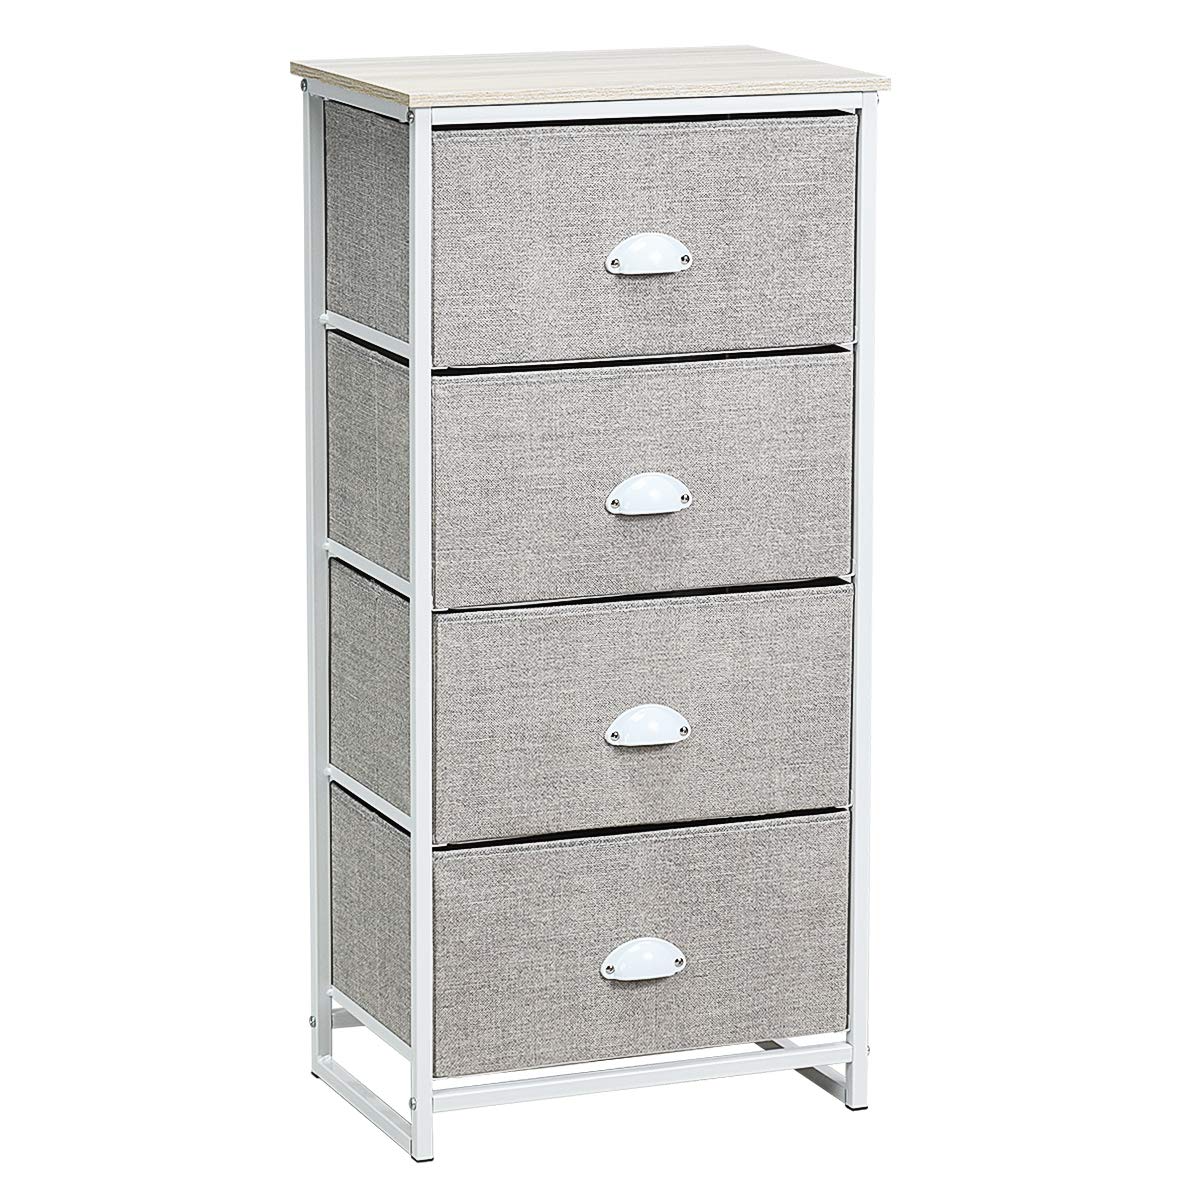 Giantex Dresser Storage Tower Nightstand W/Fabric Drawers